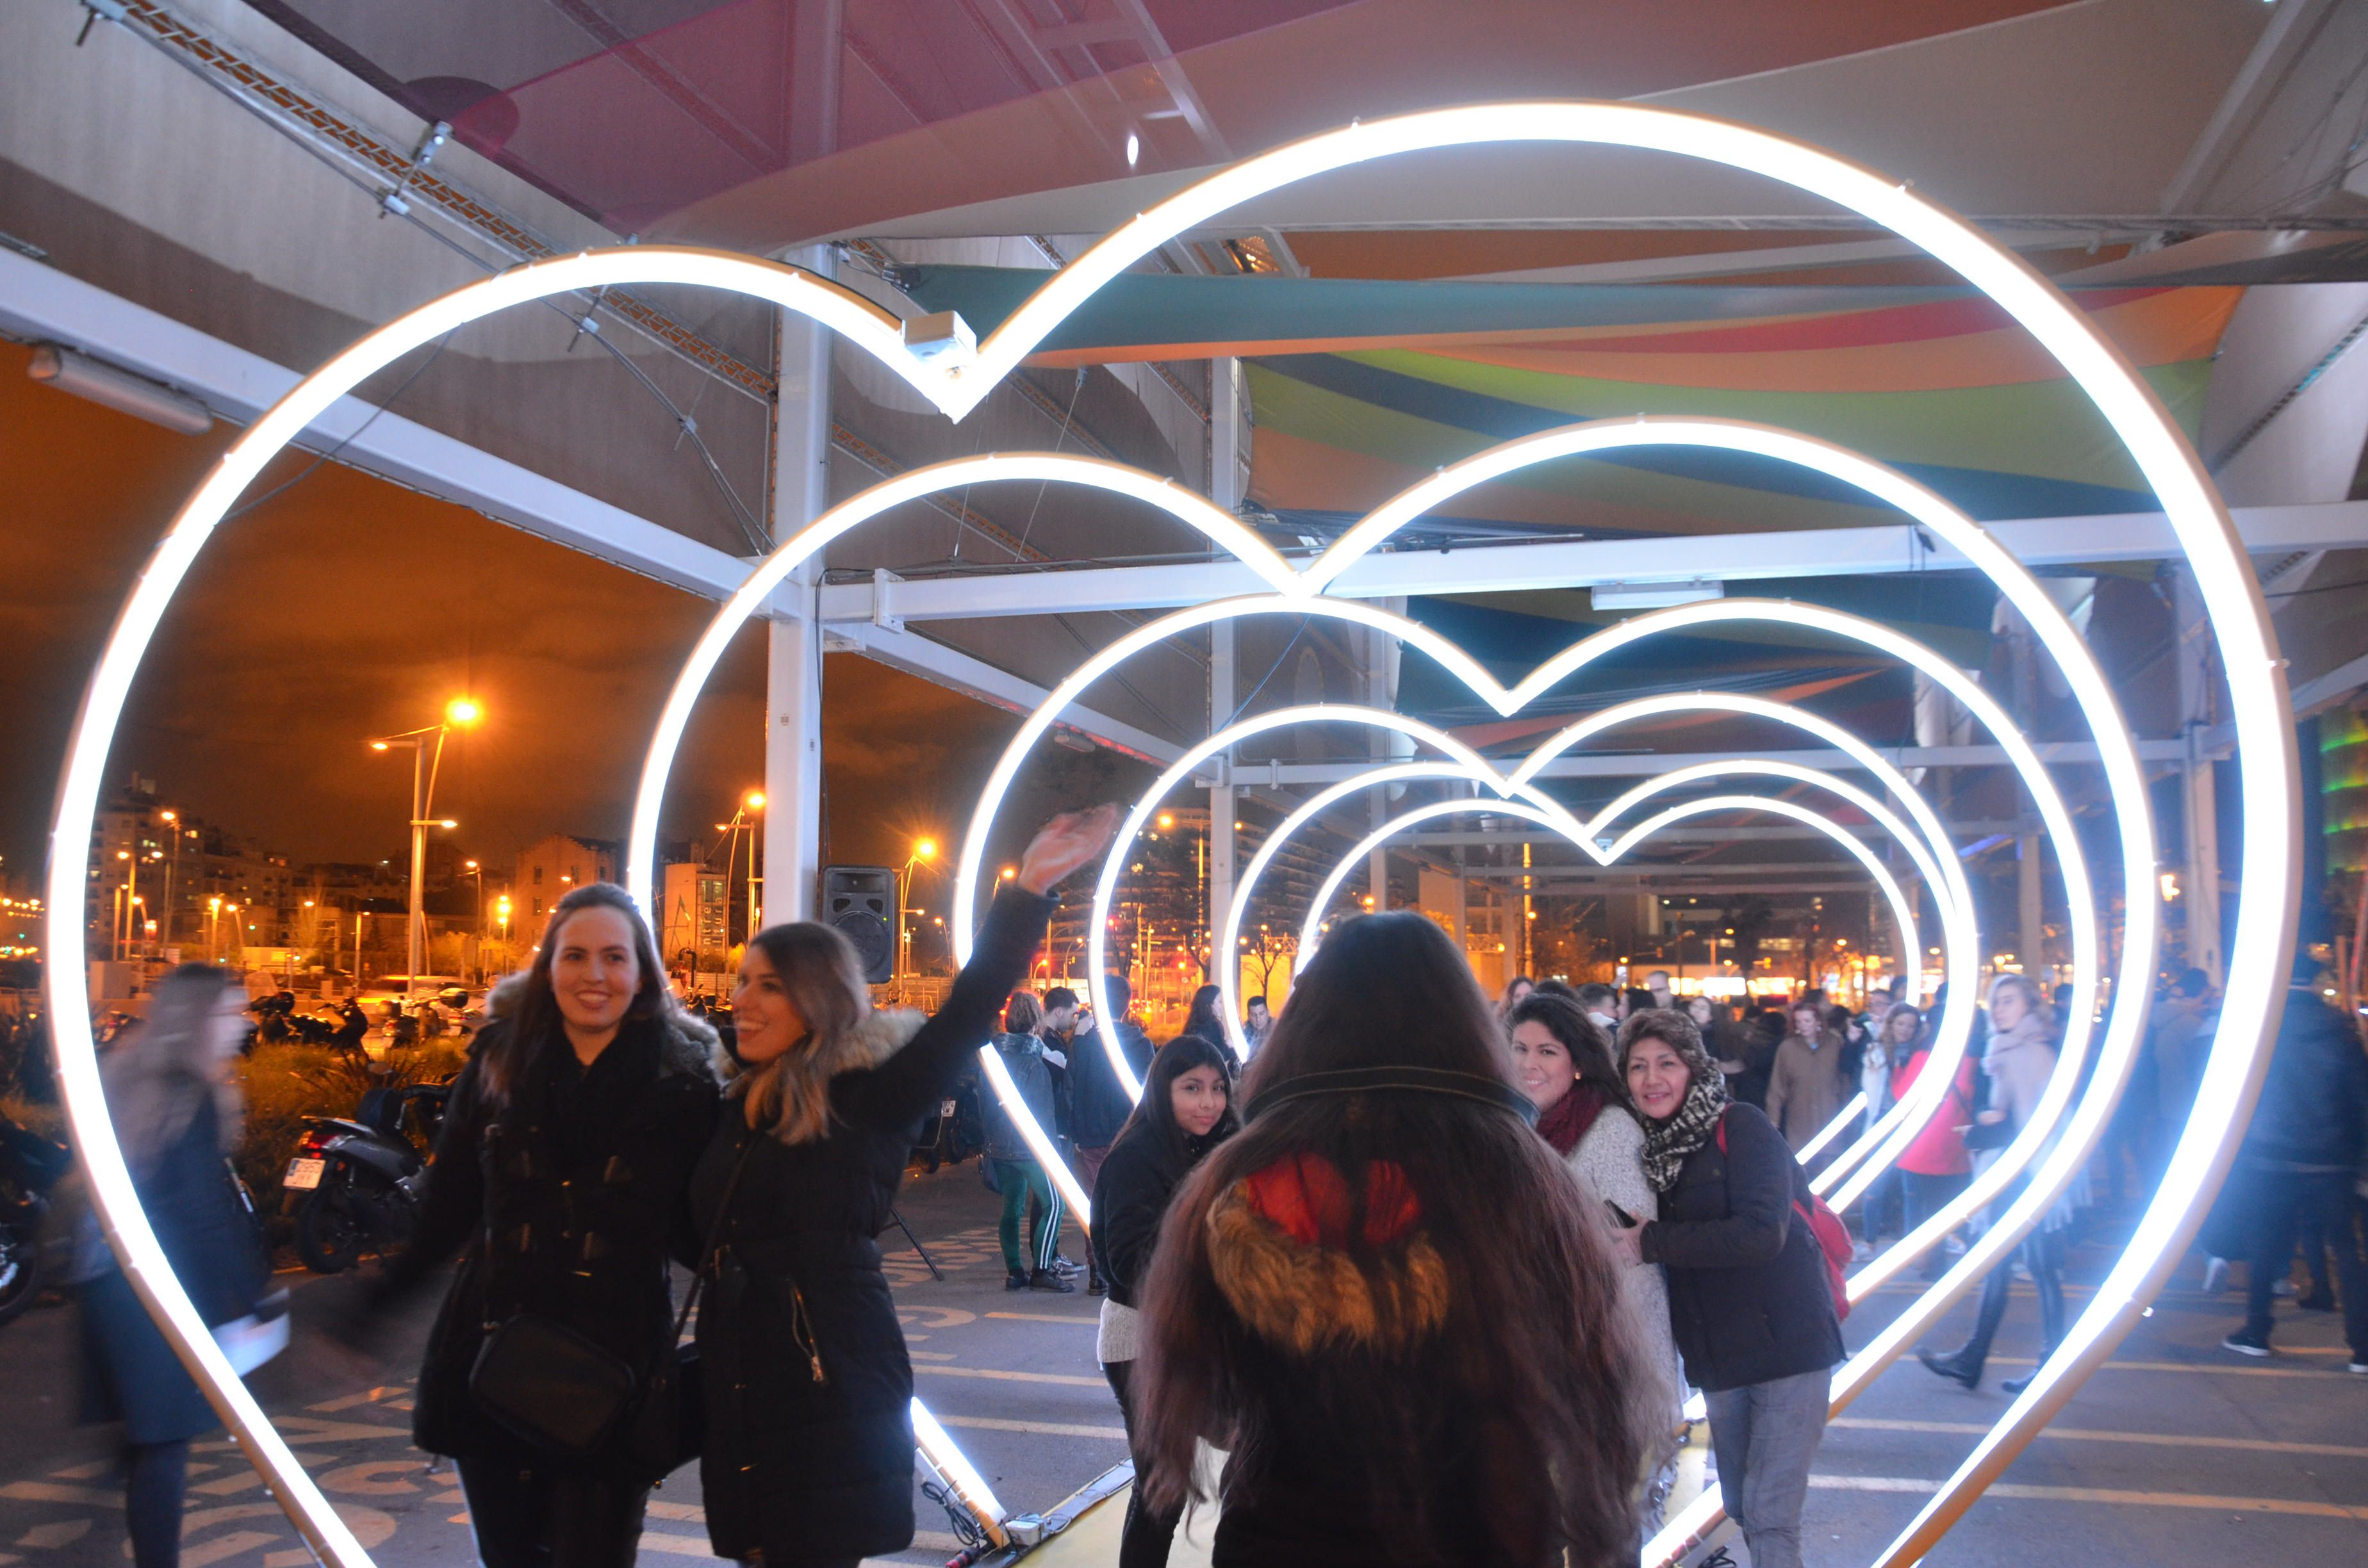 Festival Llum BCN, Light Festival, Barcelona: Every February